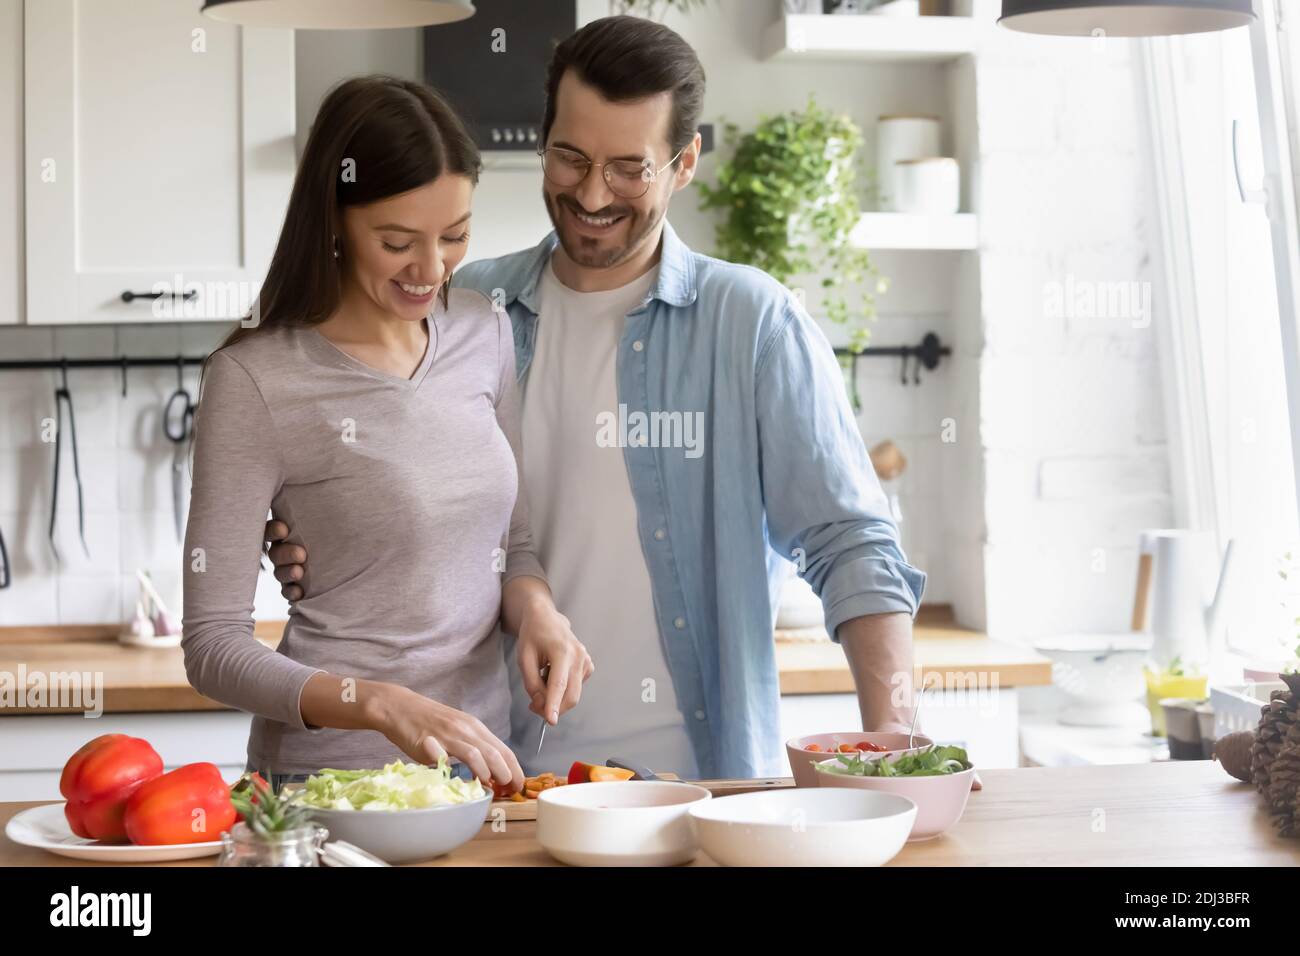 Un jeune couple heureux cuisant ensemble des aliments sains dans la cuisine Banque D'Images